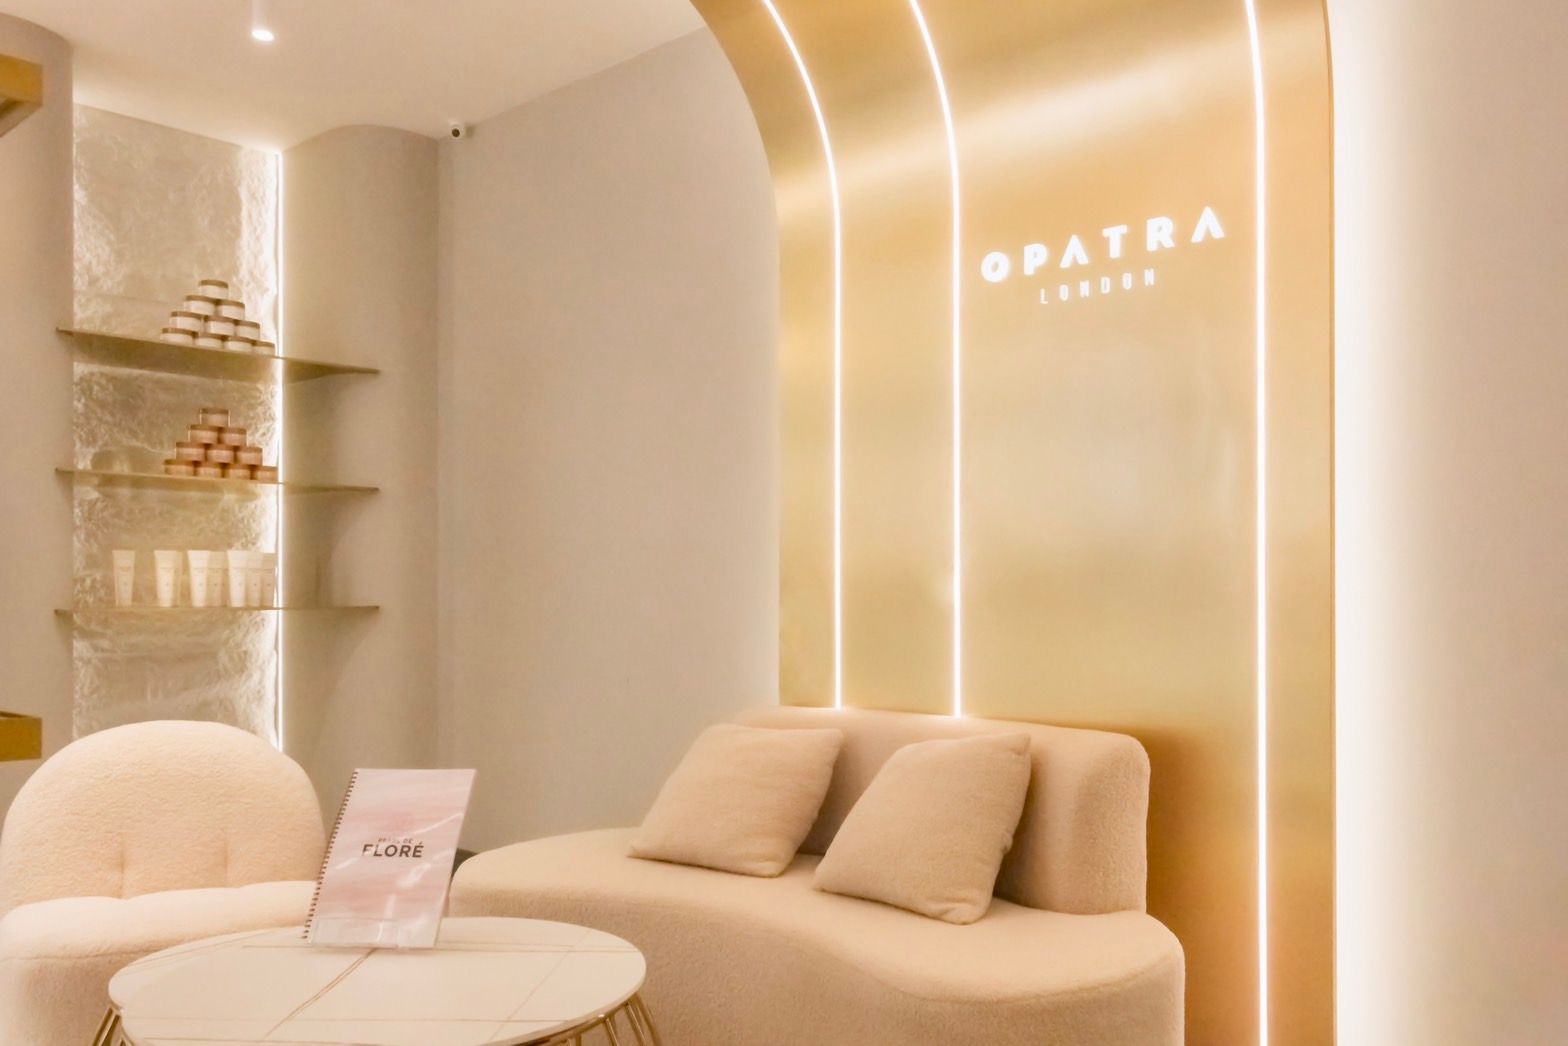 【頂級護養】英國頂級保養品牌 OPATRA SPA 療癒頂級